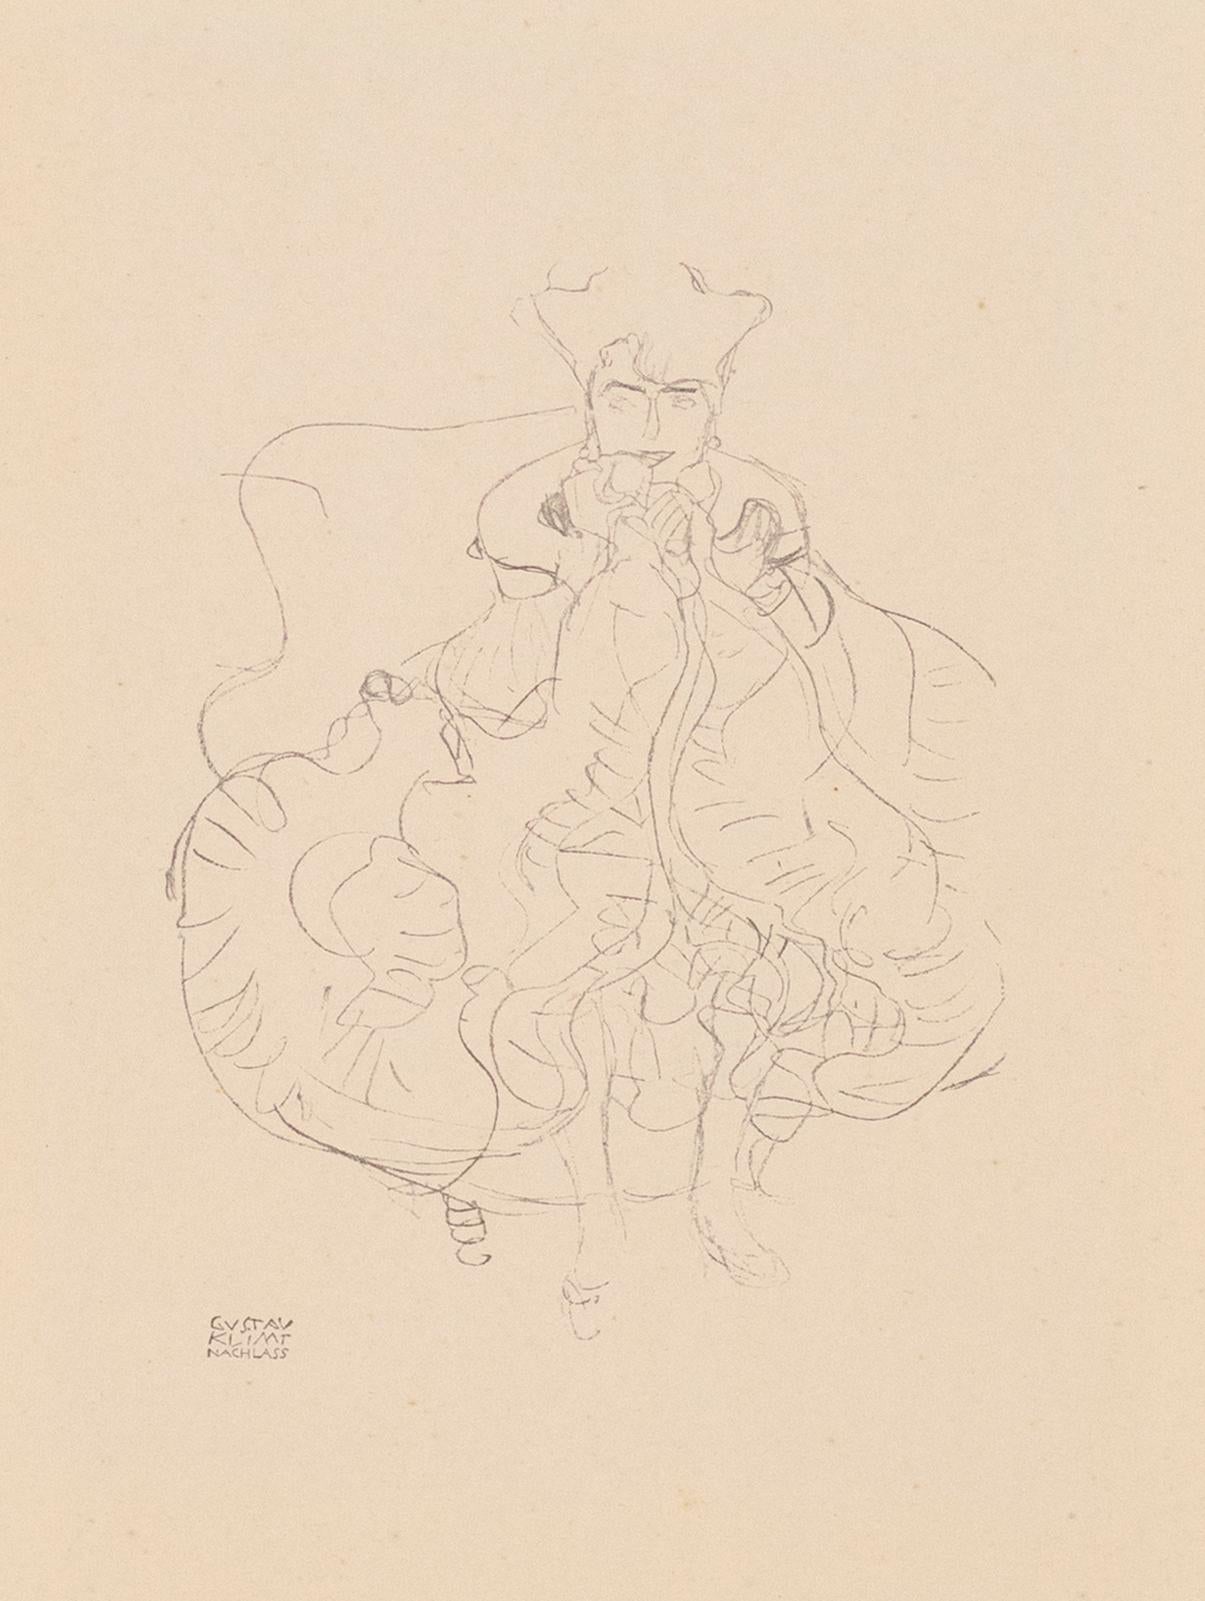 Femme assise, Gustav Klimt Handzeichnungen (Sketch) lithographie collotype, 1922 - Print de (after) Gustav Klimt